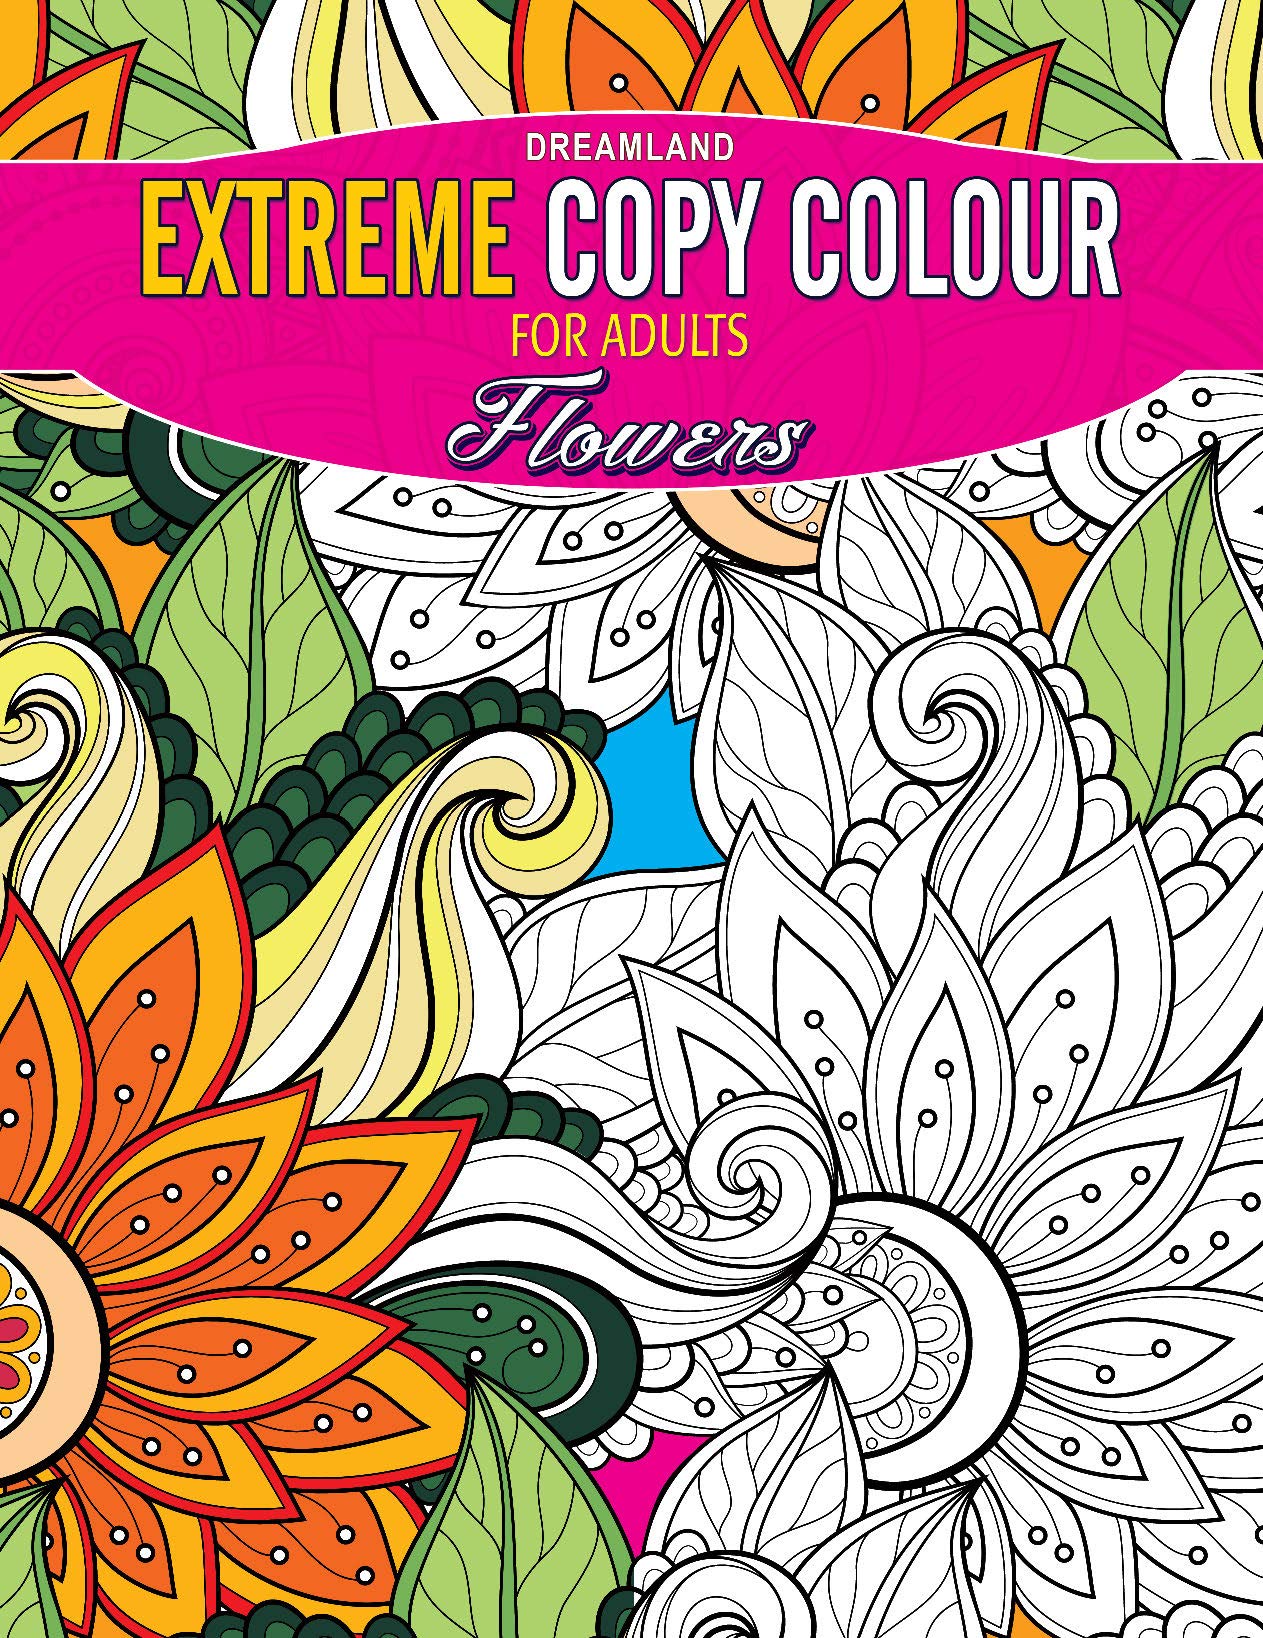 Extreme Copy Colour - Flowers